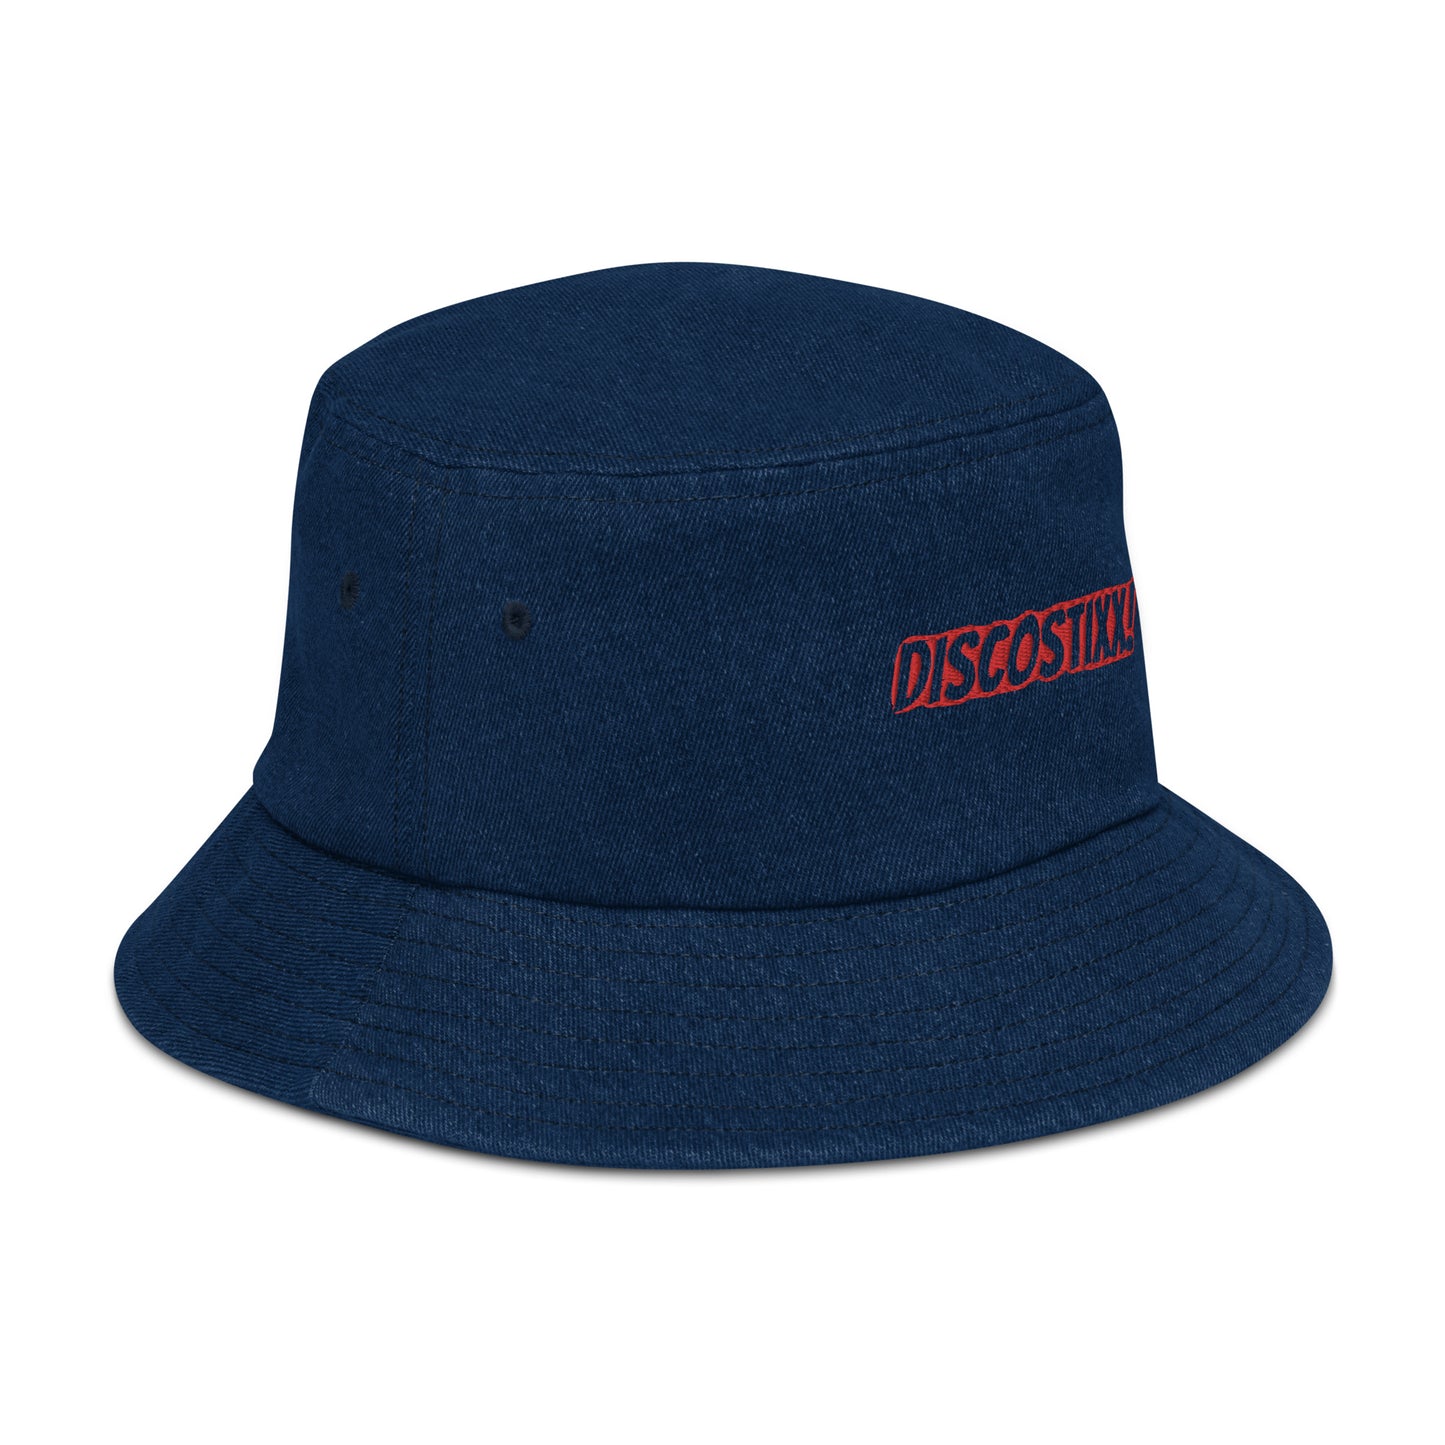 DISCOSTIXX Denim bucket hat